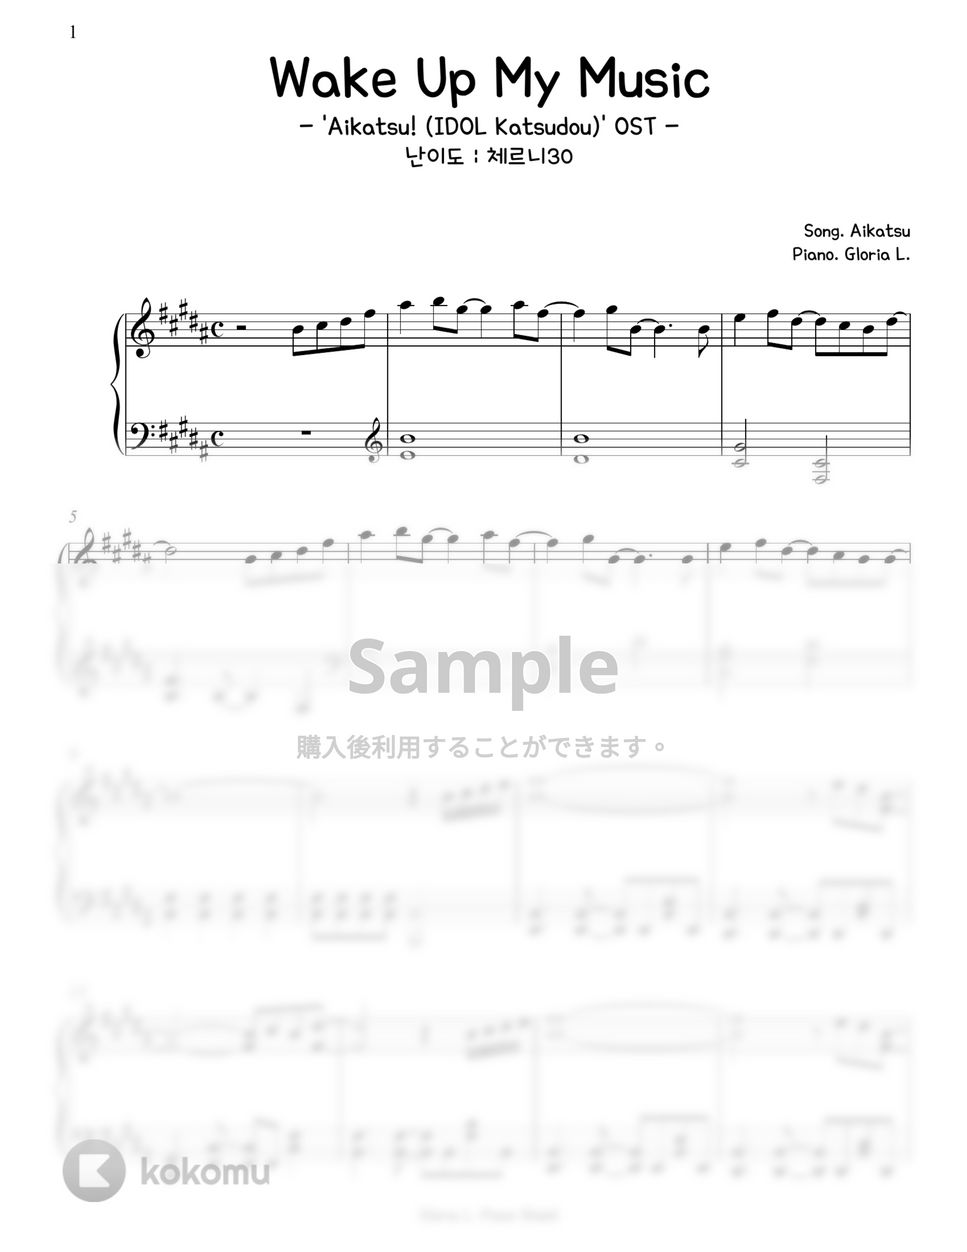 アイカツ - Wake Up My Music ('Aikatsu! -IDOL Katsudou-' OST) (難易度:チェルニー30) by Gloria L.